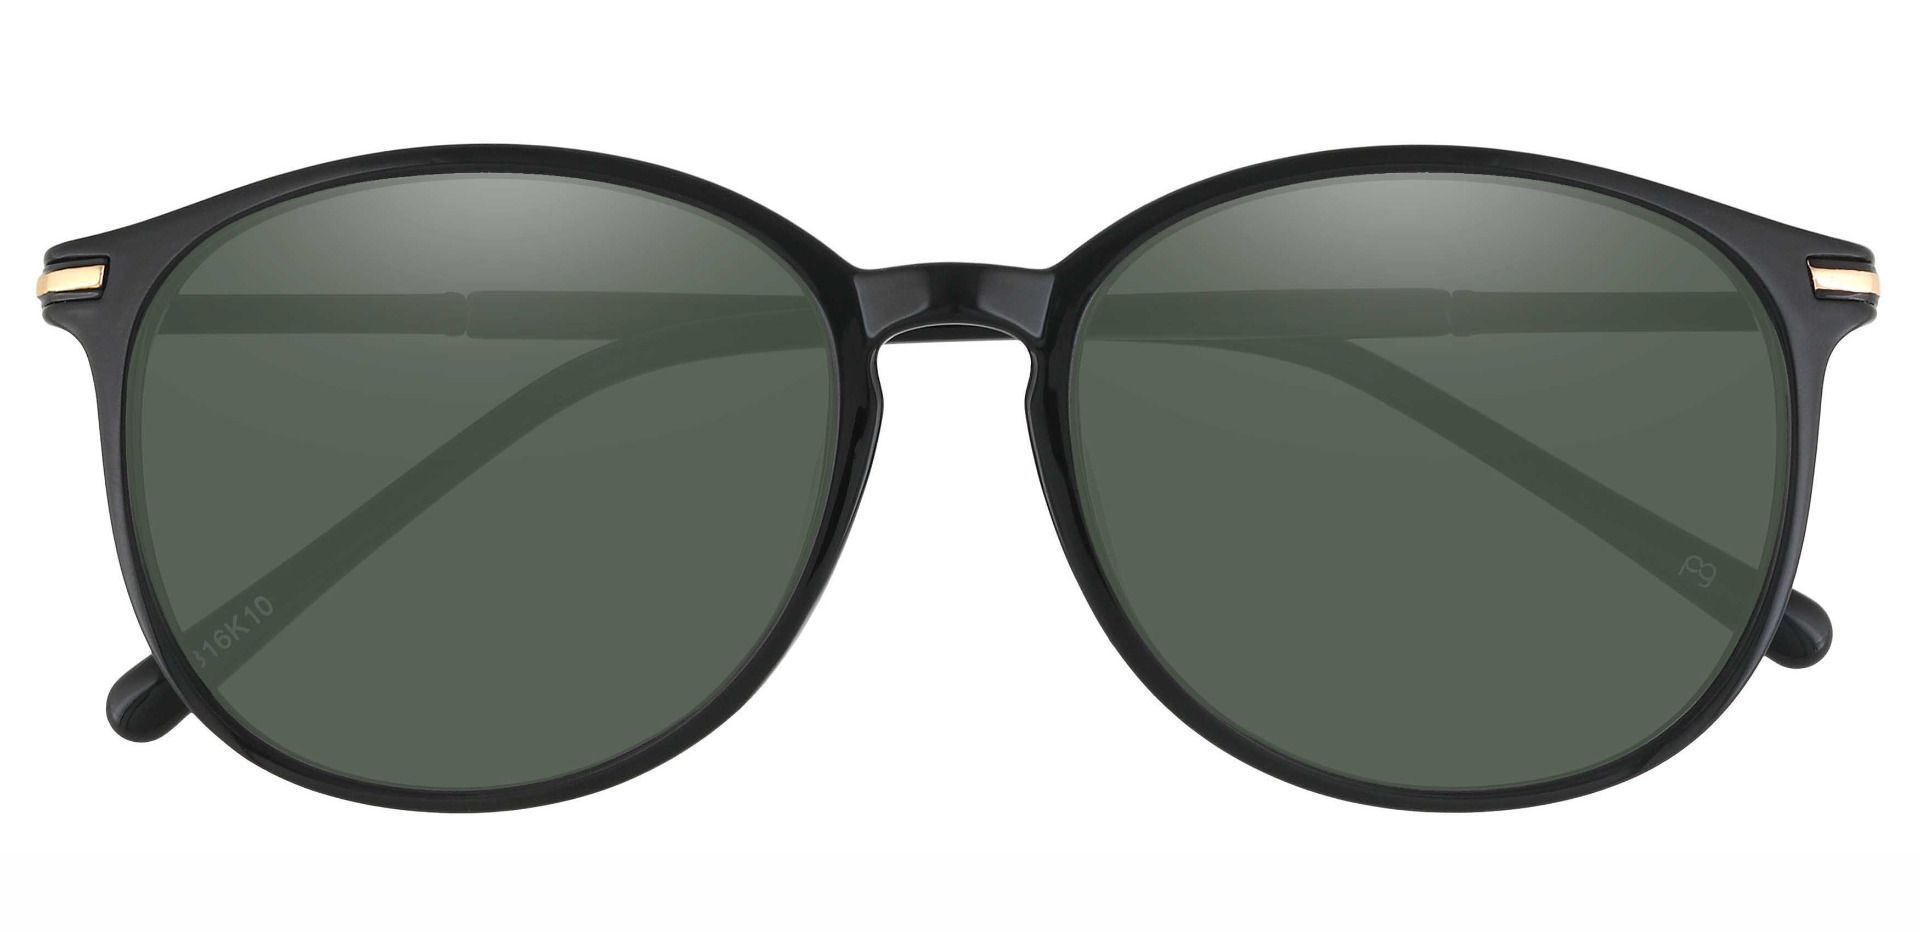 Danbury Oval Reading Sunglasses - Black Frame With Green Lenses